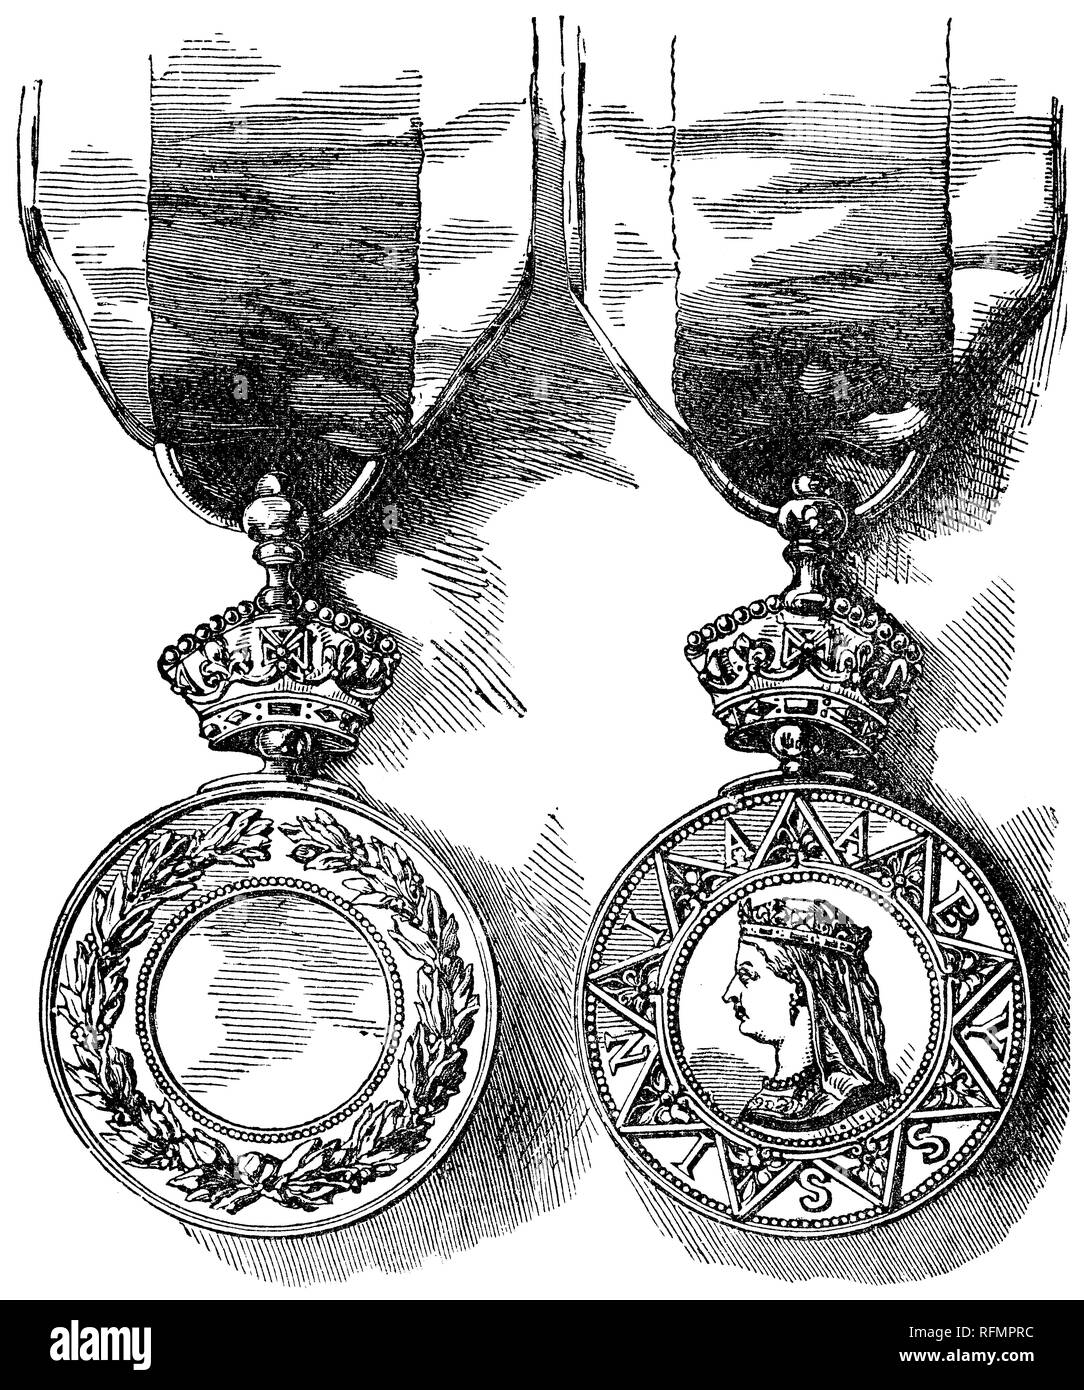 1888 viktorianischen Gravur der Vorder- und Rückseiten der Abessinische Krieg Medaille, die britischen und indischen Streitkräfte in die Expedition 1868 ausgezeichnet nach Abessinien. Stockfoto